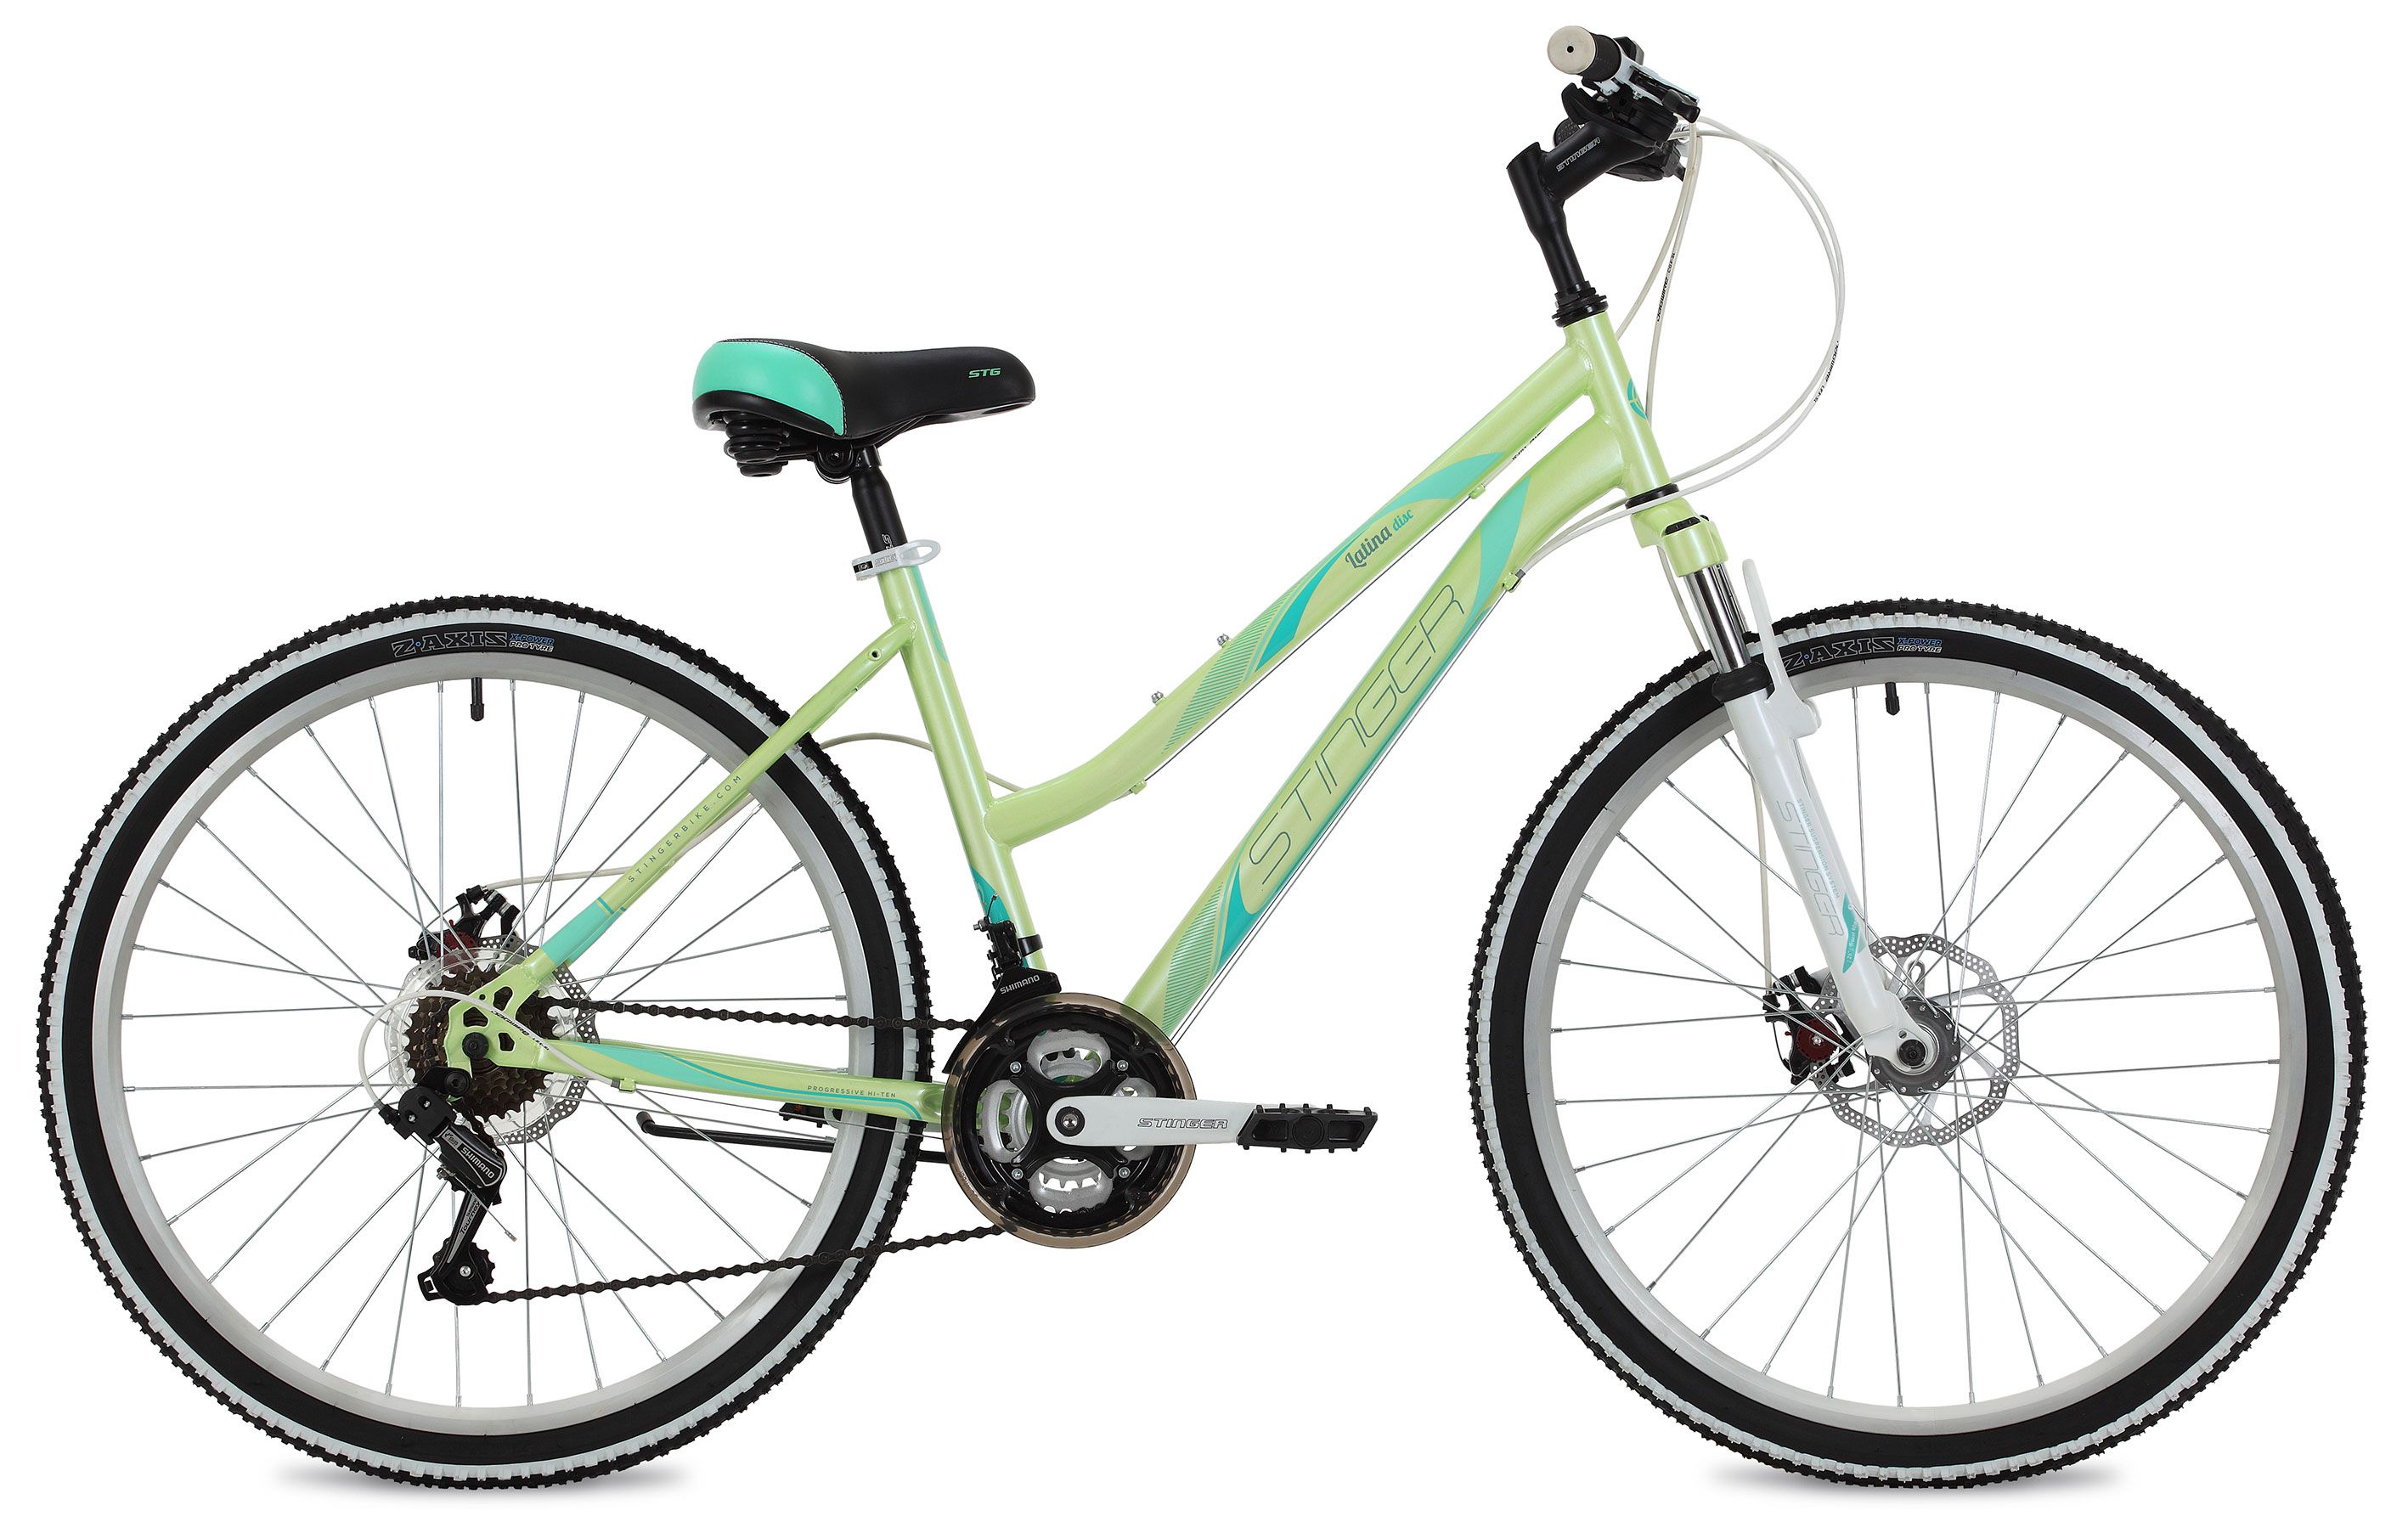  Отзывы о Женском велосипеде Stinger Latina D 26 2020